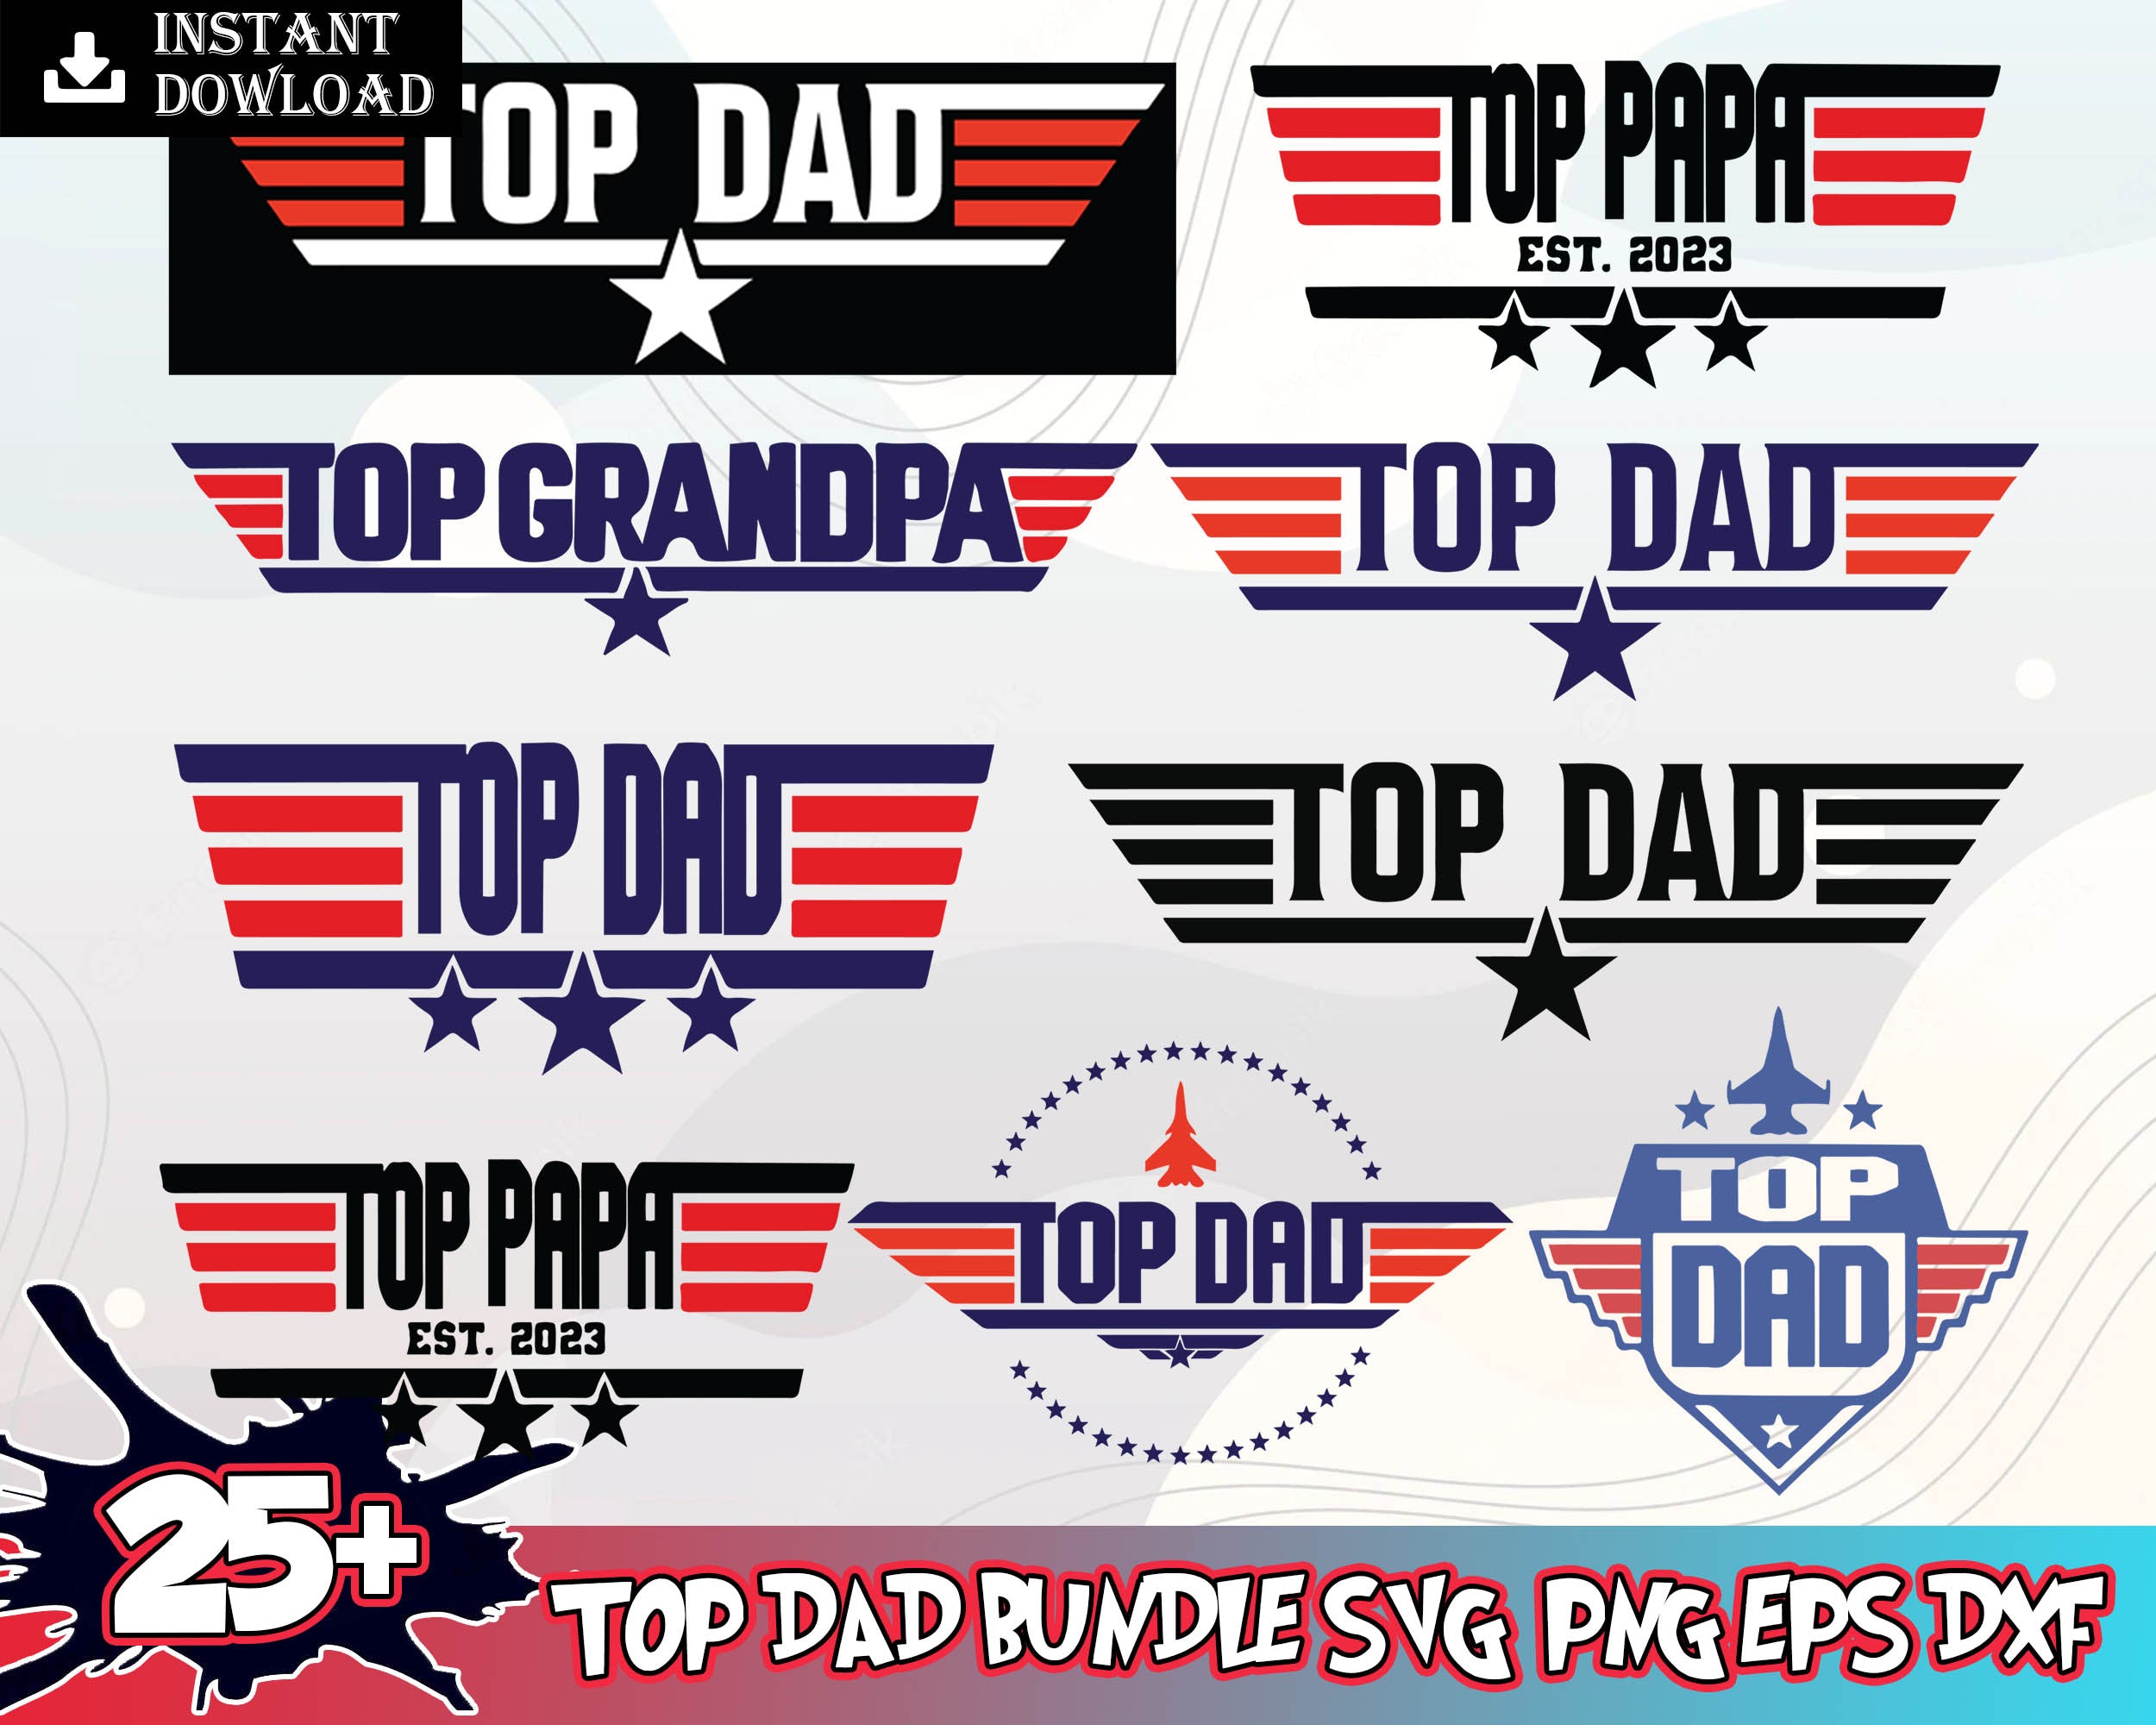 Top Dad Bundle SVG, PNG, EPS, DXF - Digital Download